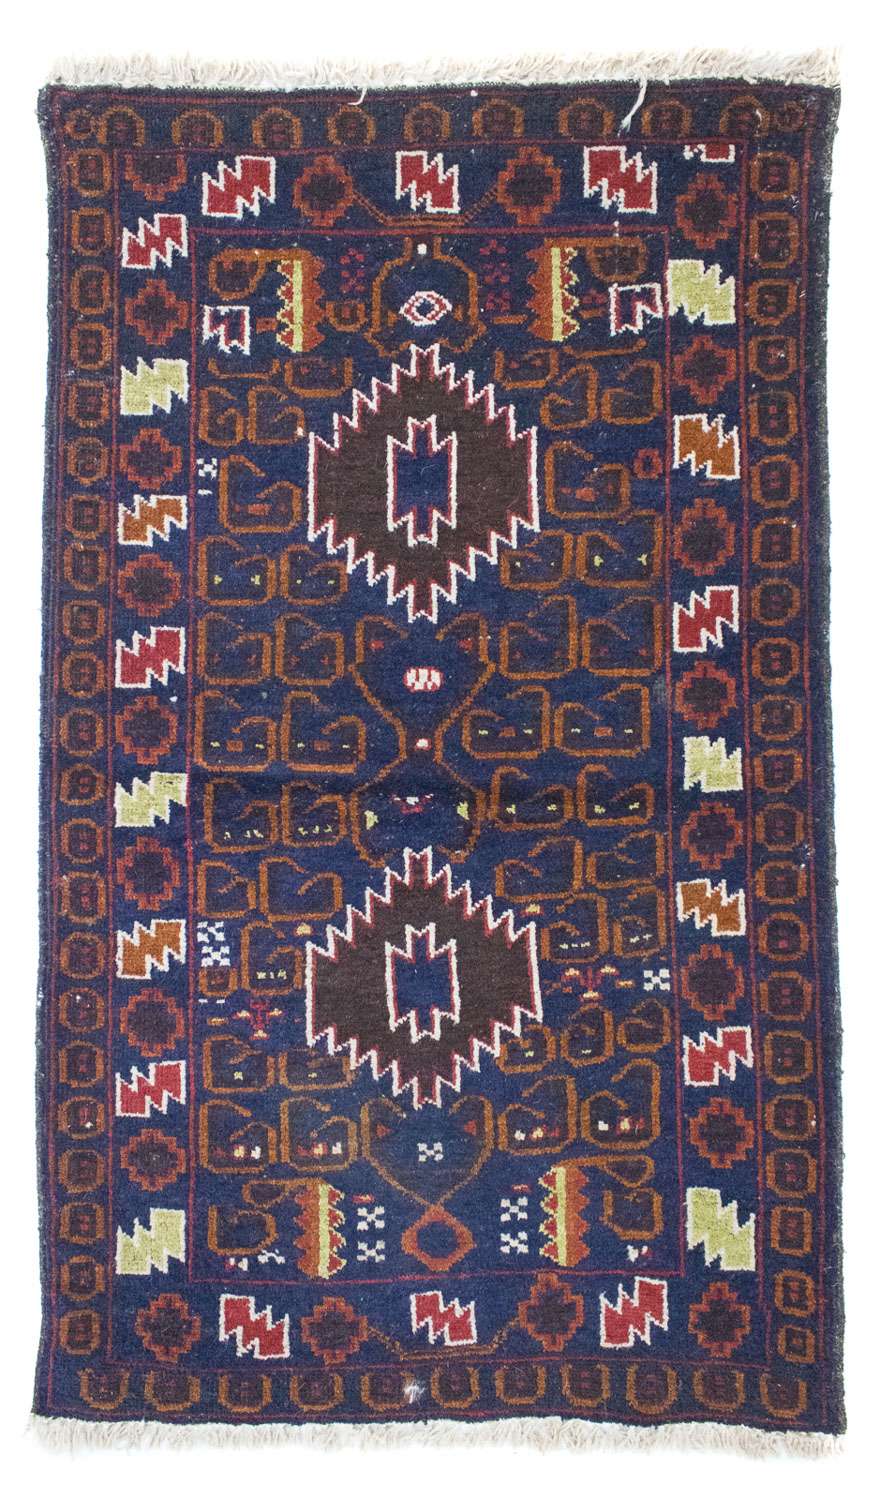 Balutsj-teppe - 136 x 76 cm - blå